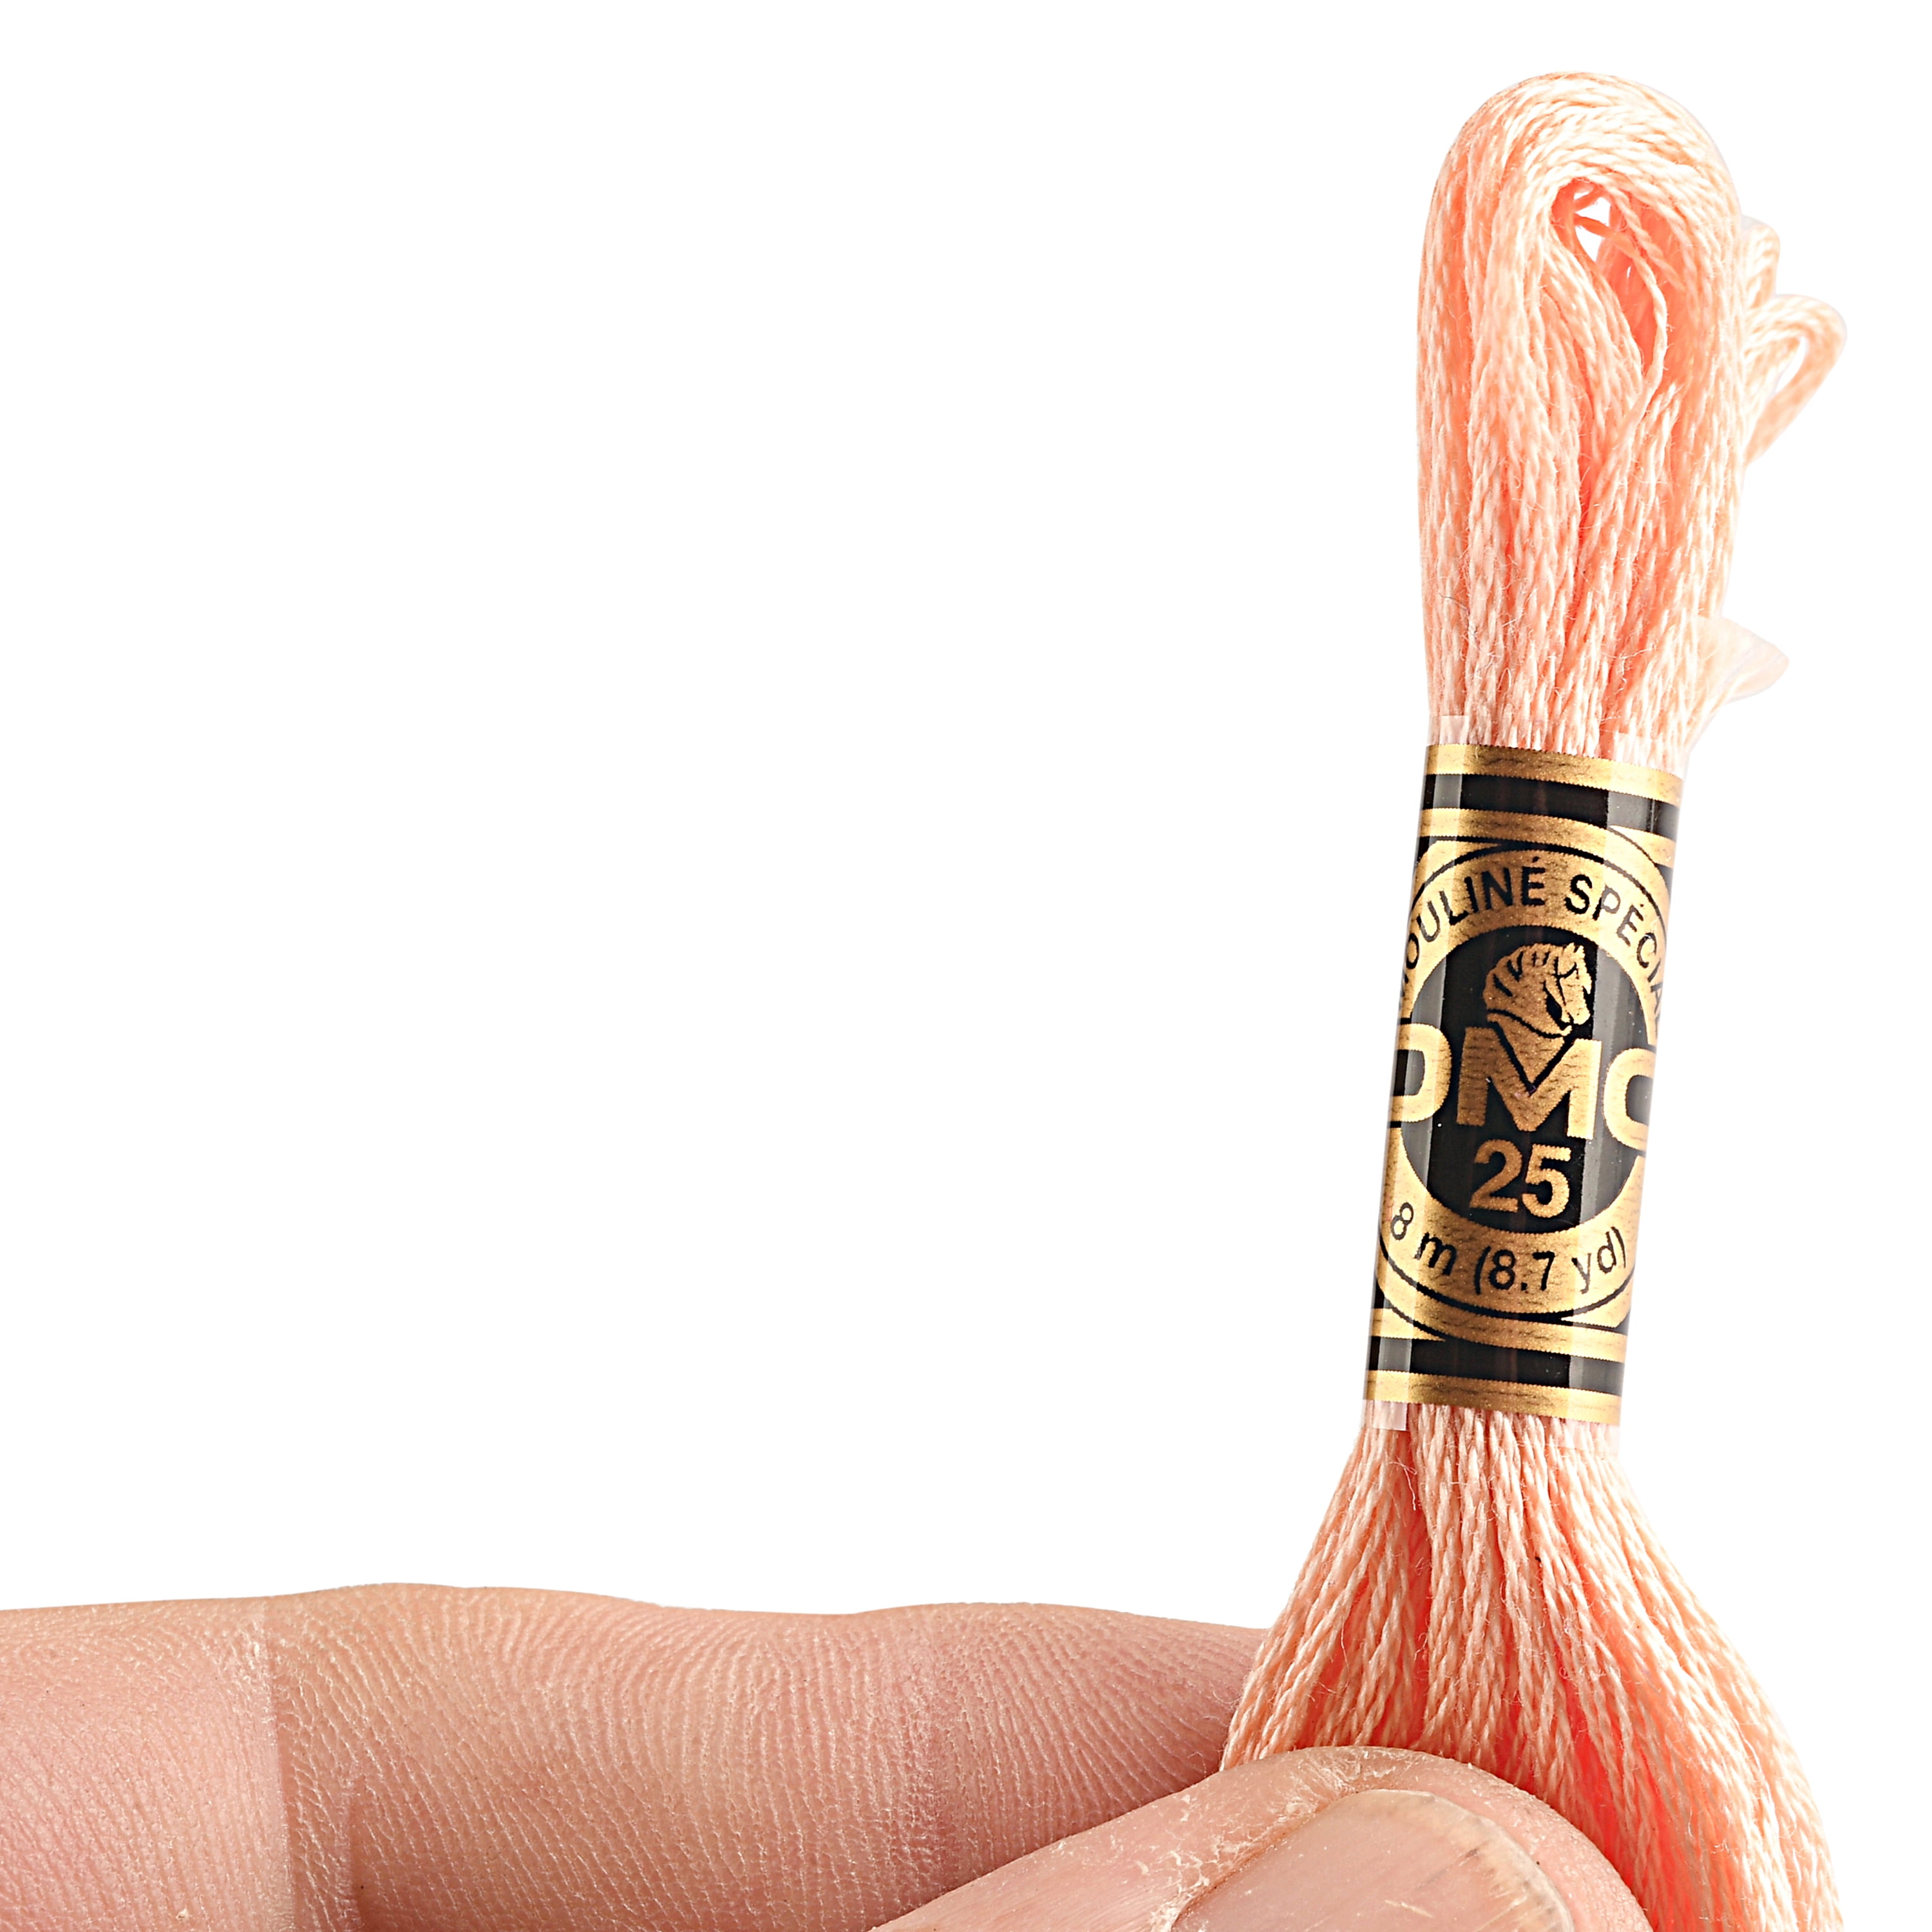 DMC Mouline Special Peach Flesh Floss Embroidery Yarn, 8.7 Yd